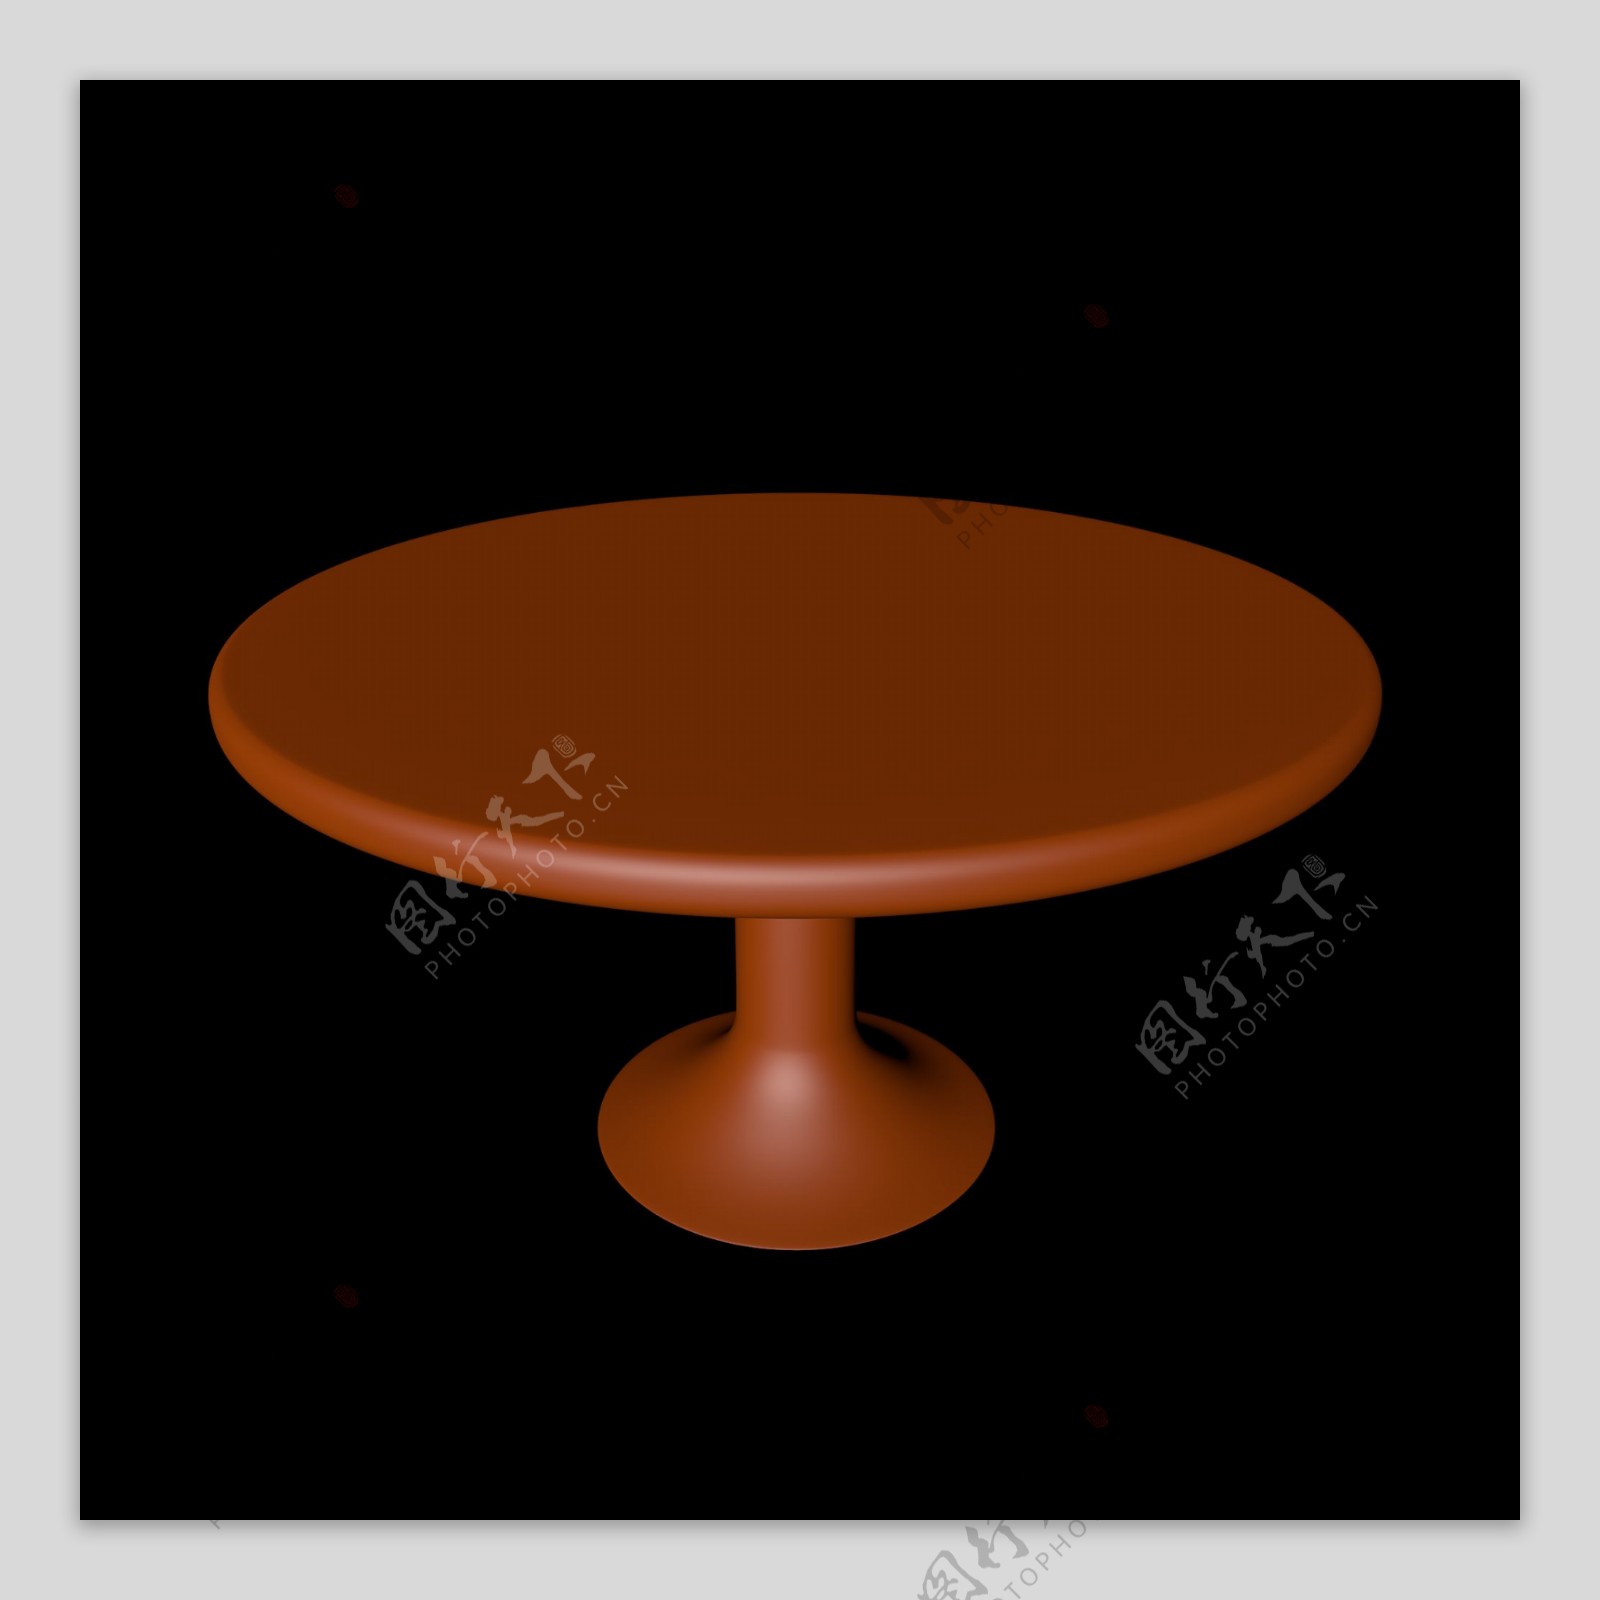 红木家具桌子